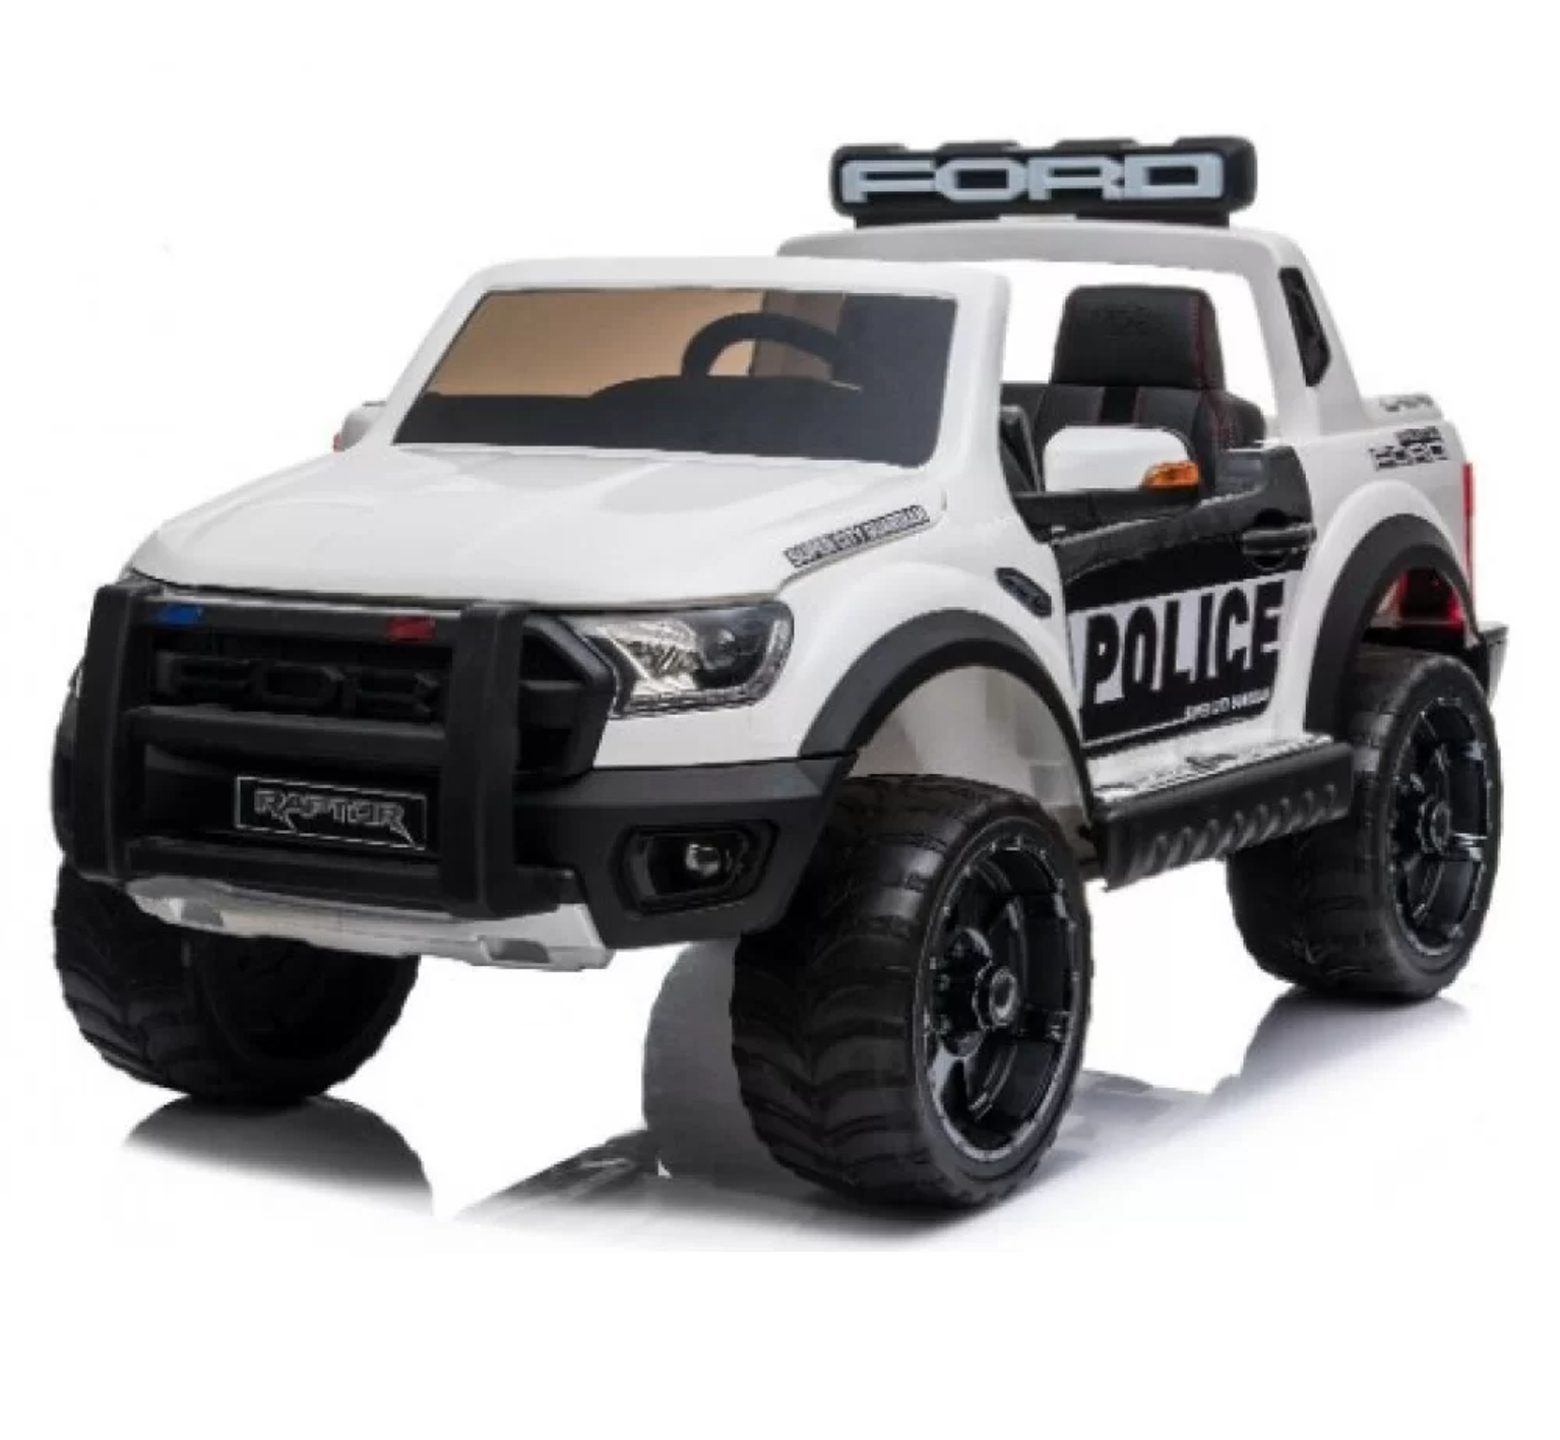 Ηλεκτροκίνητο τζιπ Ford Ranger Raptor Original License 12Volt περιπολικό αστυνομίας σε άσπρο χρώμα